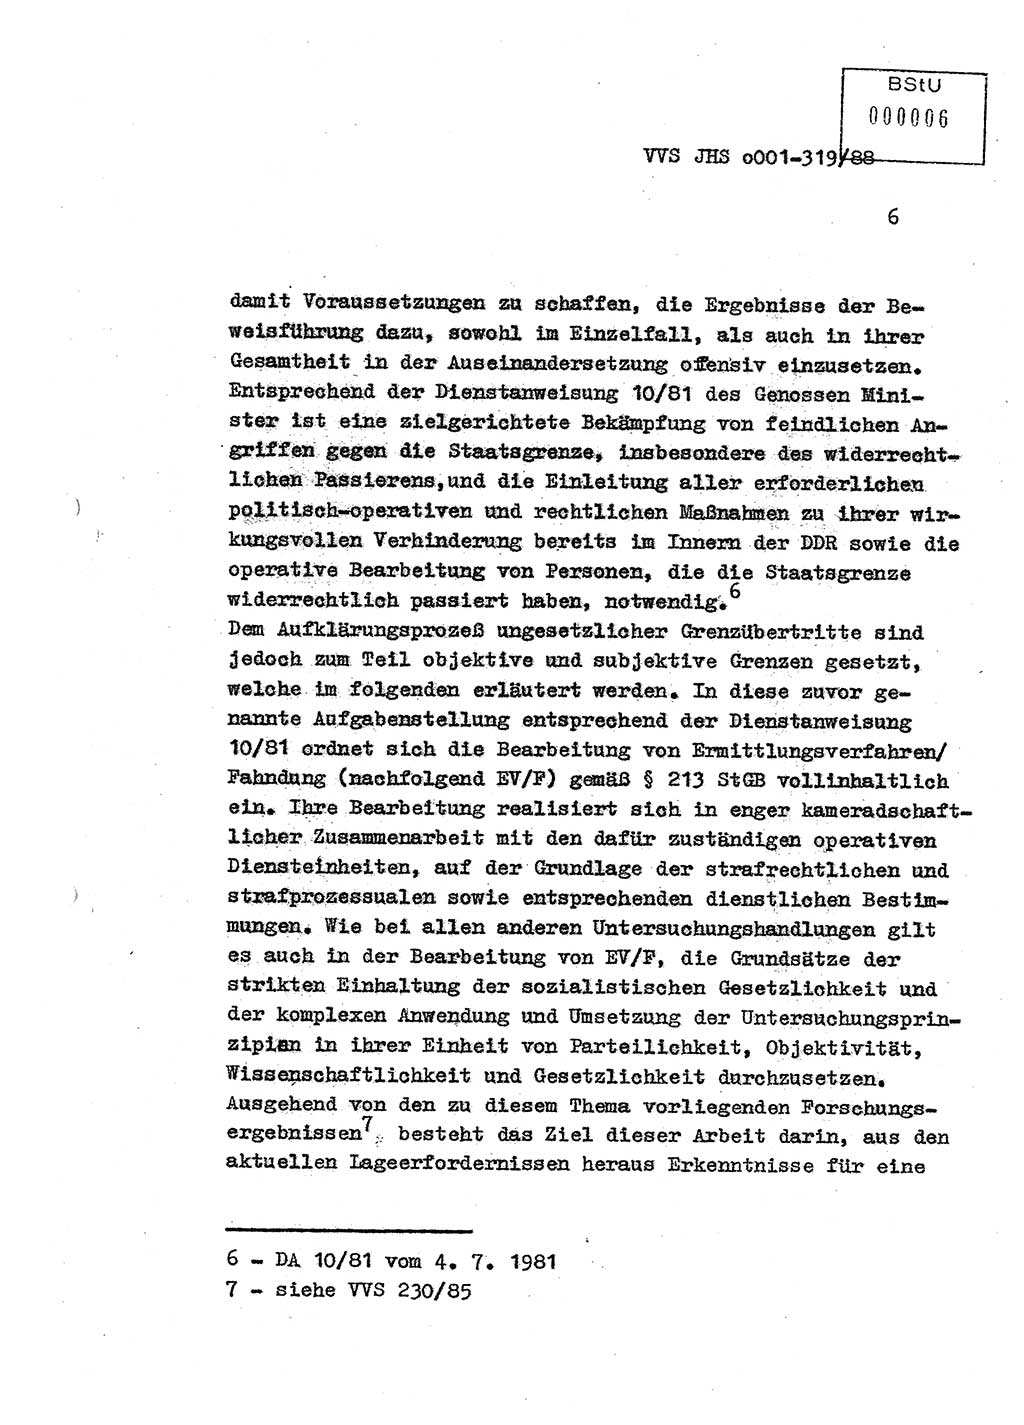 Diplomarbeit Offiziersschüler Holger Zirnstein (HA Ⅸ/9), Ministerium für Staatssicherheit (MfS) [Deutsche Demokratische Republik (DDR)], Juristische Hochschule (JHS), Vertrauliche Verschlußsache (VVS) o001-319/88, Potsdam 1988, Blatt 6 (Dipl.-Arb. MfS DDR JHS VVS o001-319/88 1988, Bl. 6)